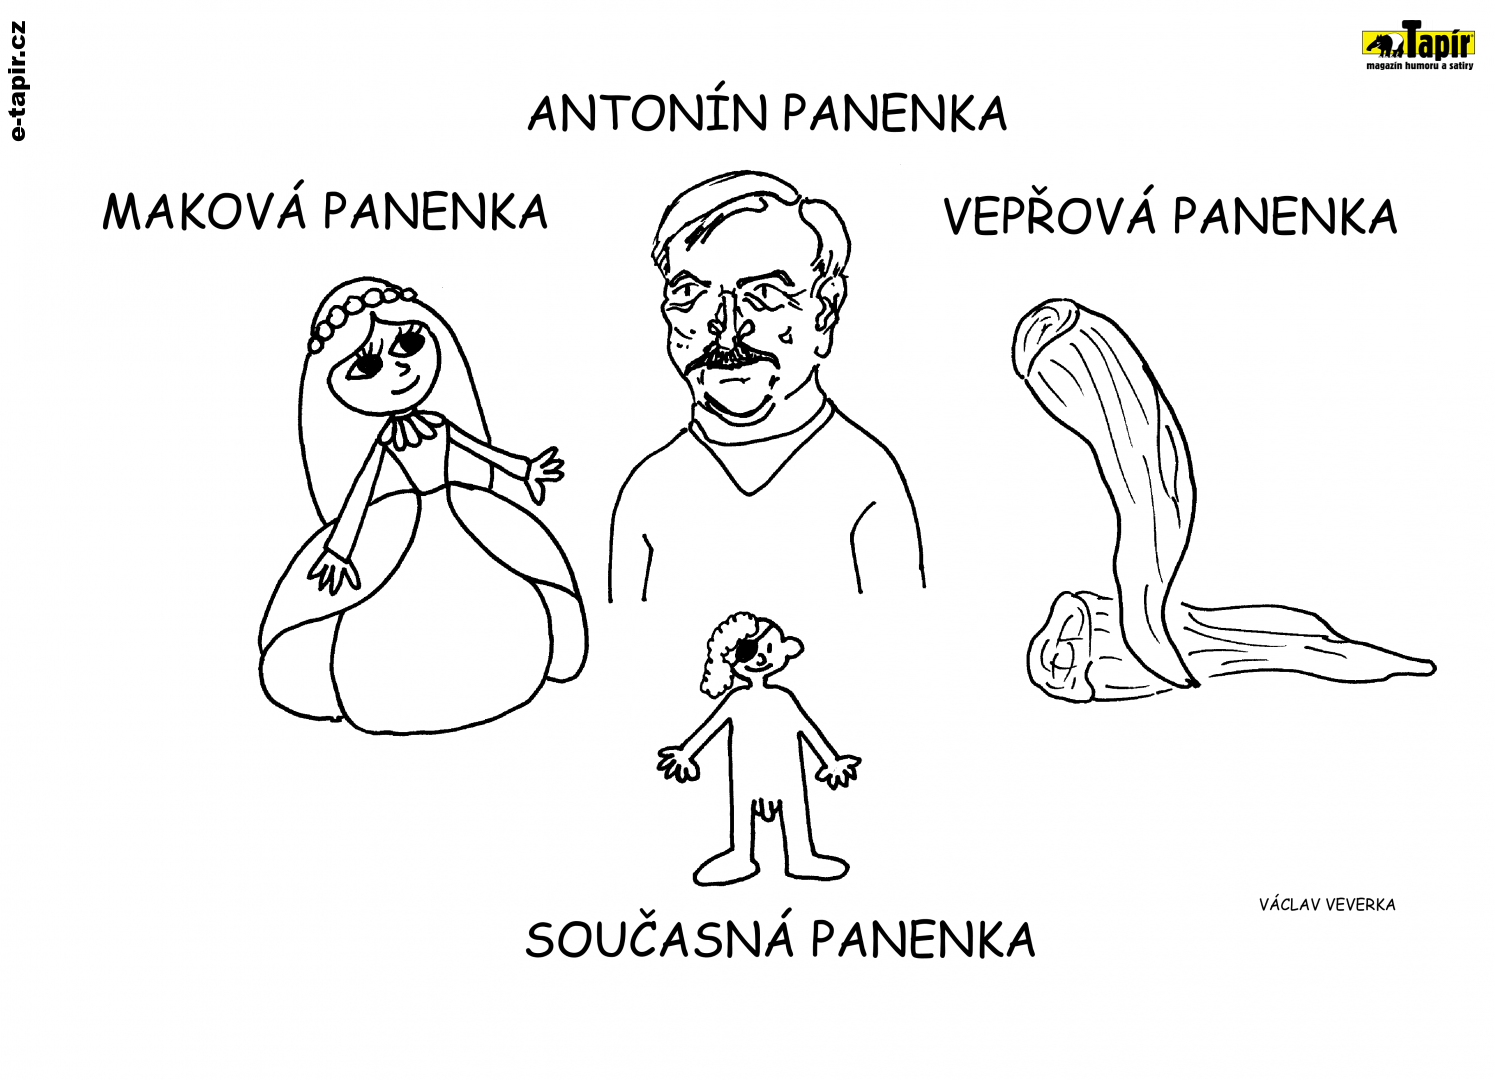 Panenka-8035885f